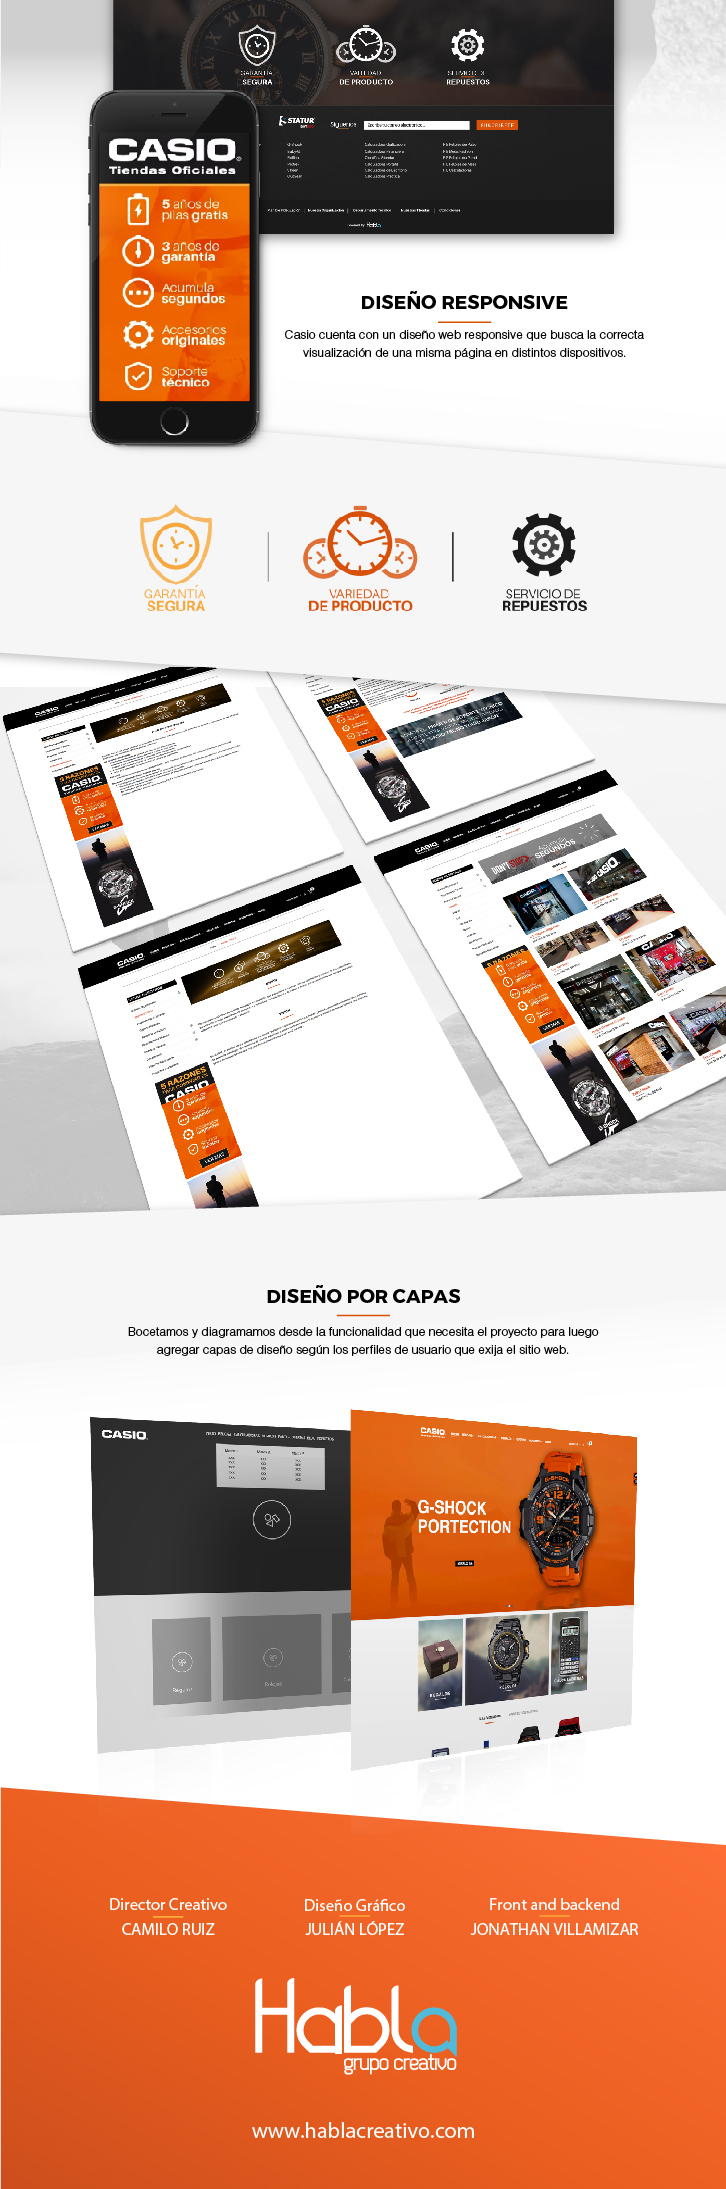 Web design e-commerce creative